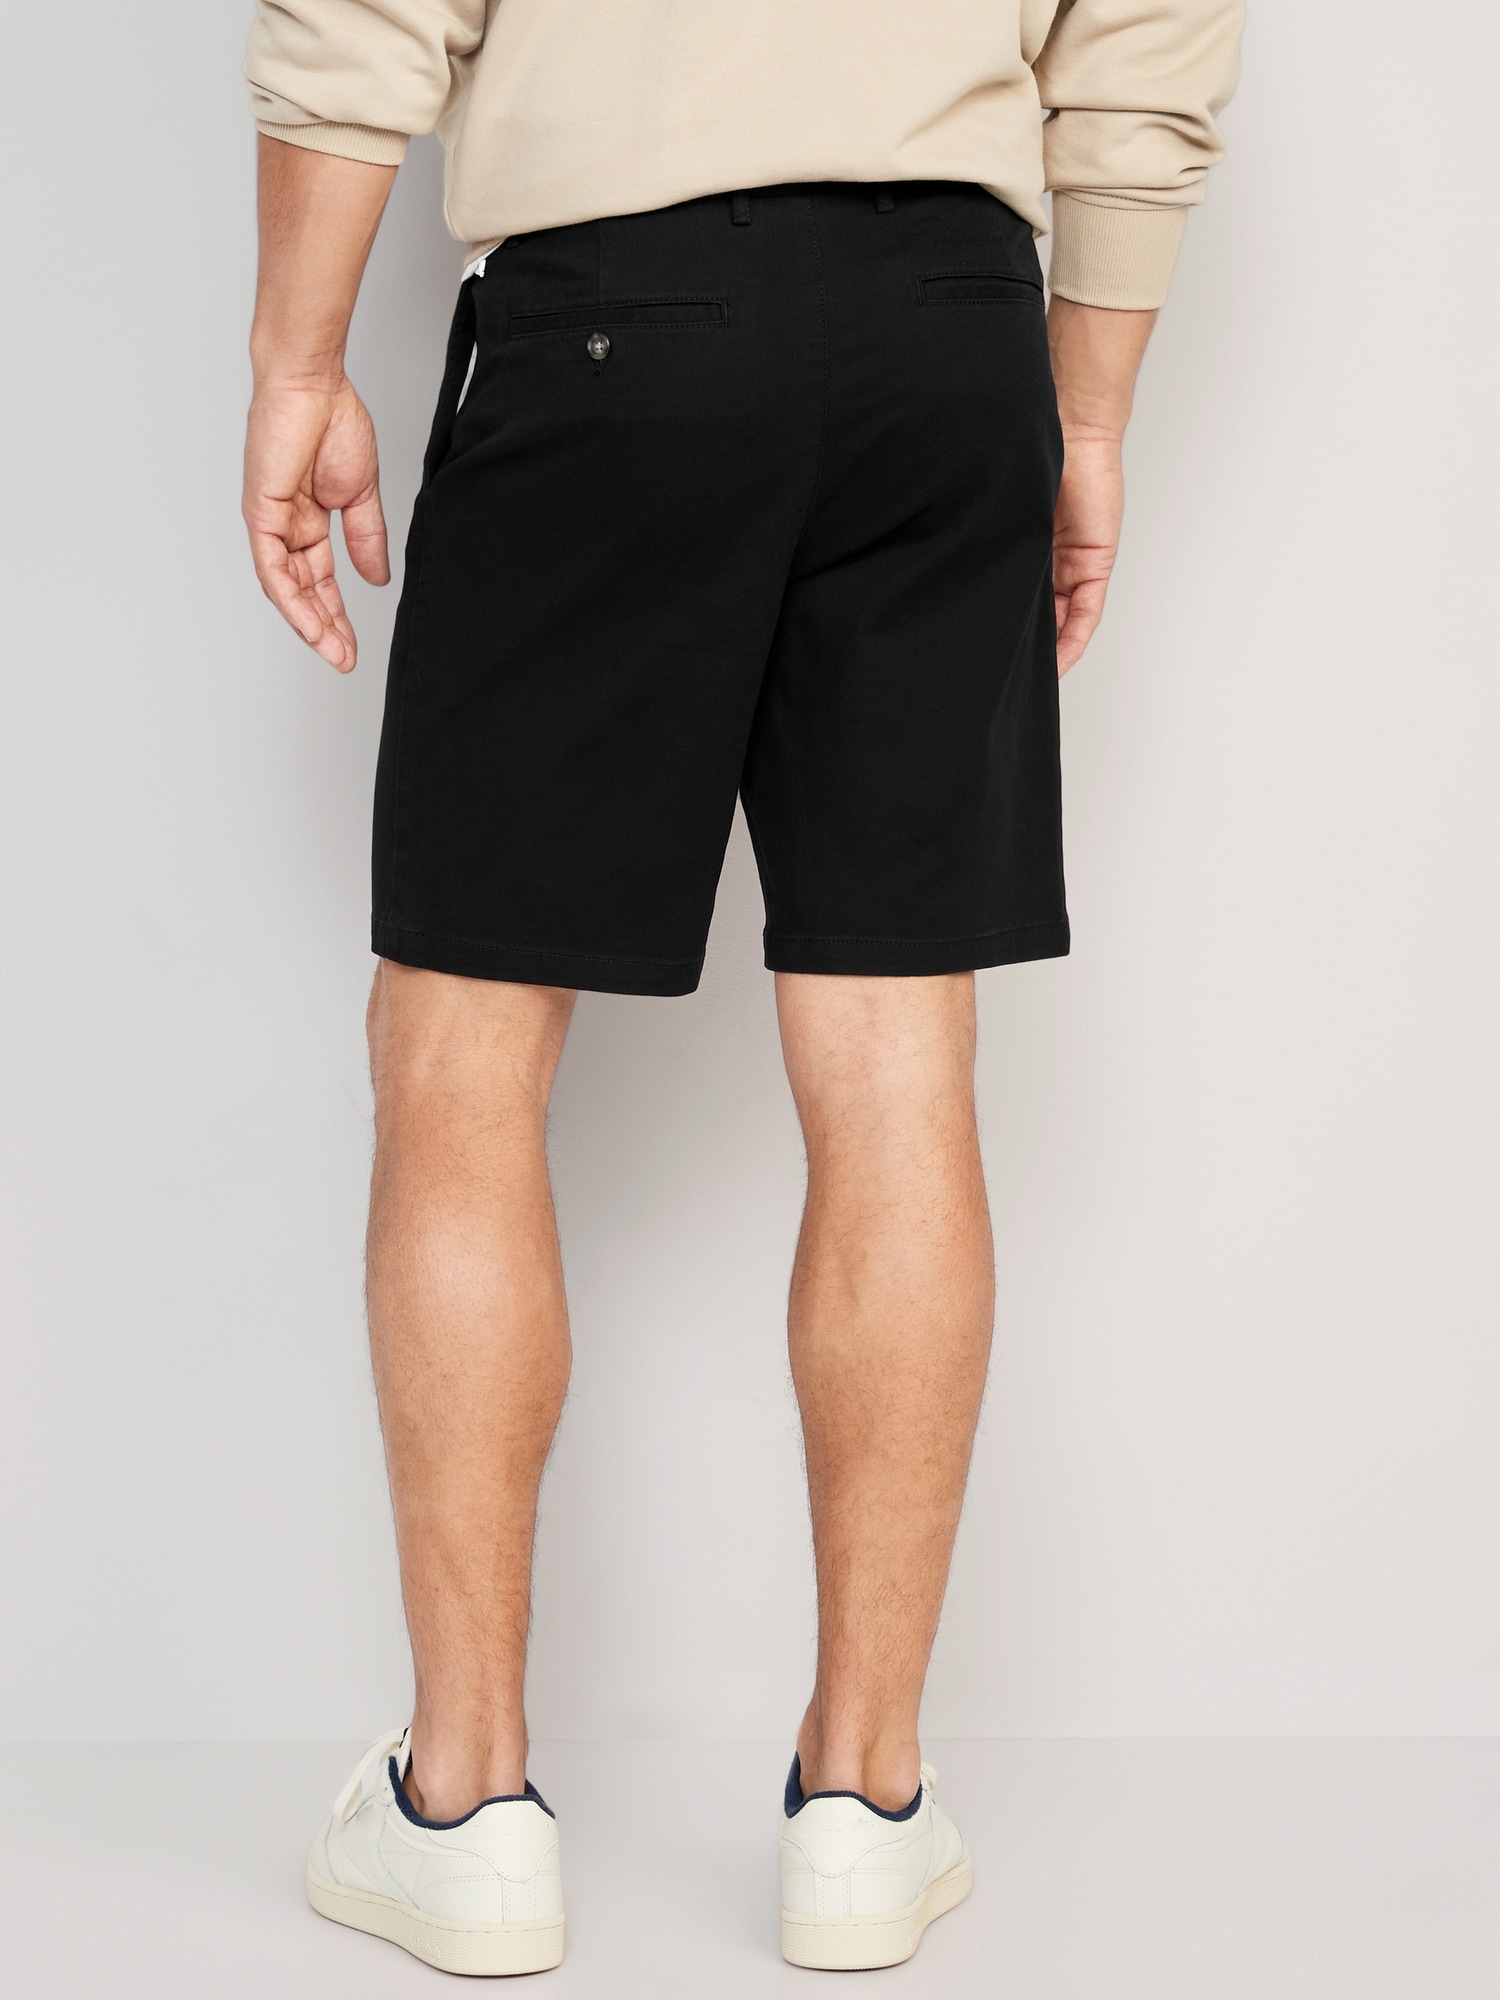 Nickel Chino Short - MEN Shorts